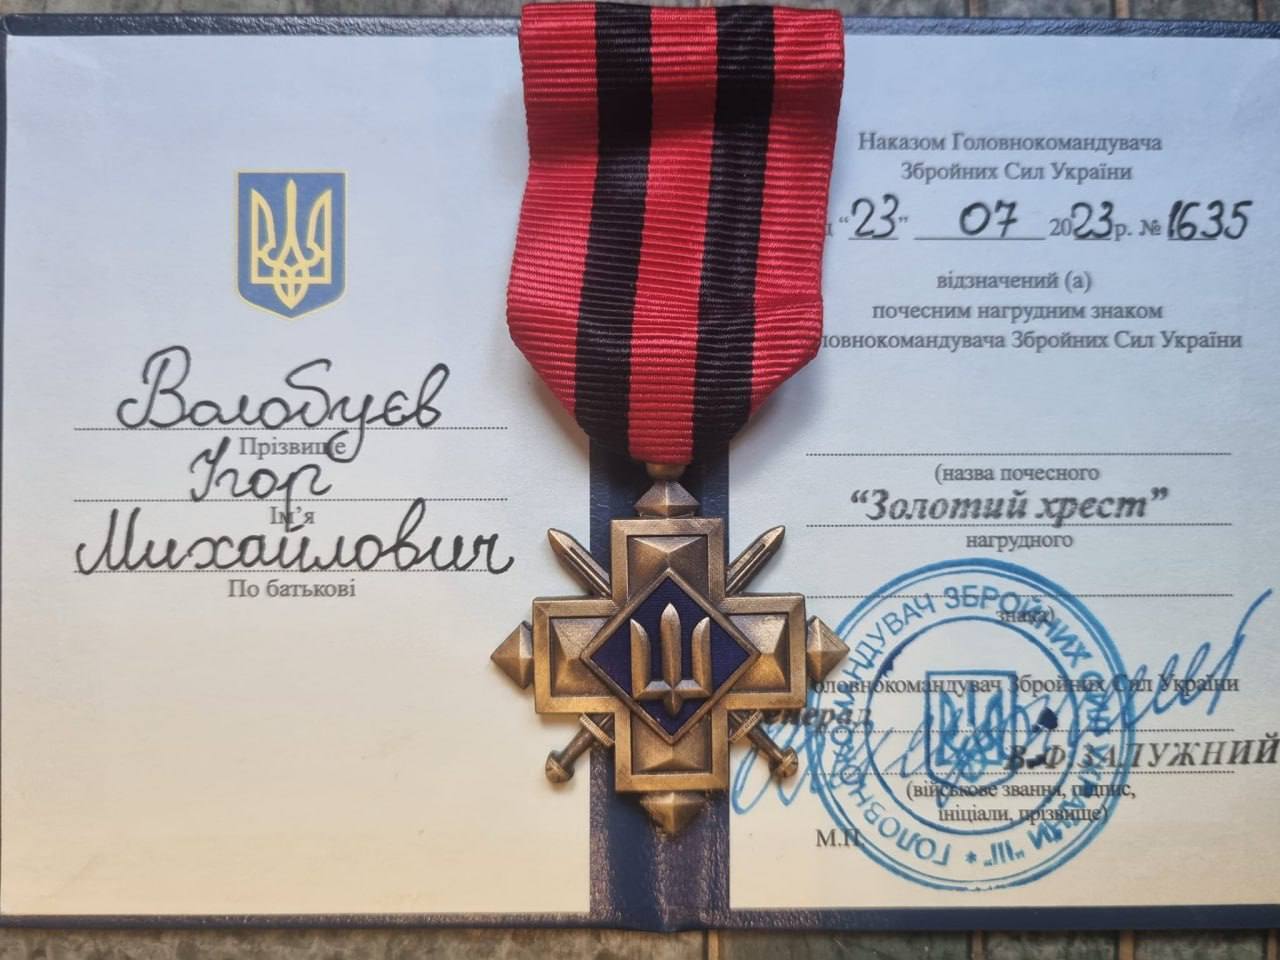 Бывший топ-менеджер путинского банка, воюющий против войск РФ, получил награду от Залужного. Фото